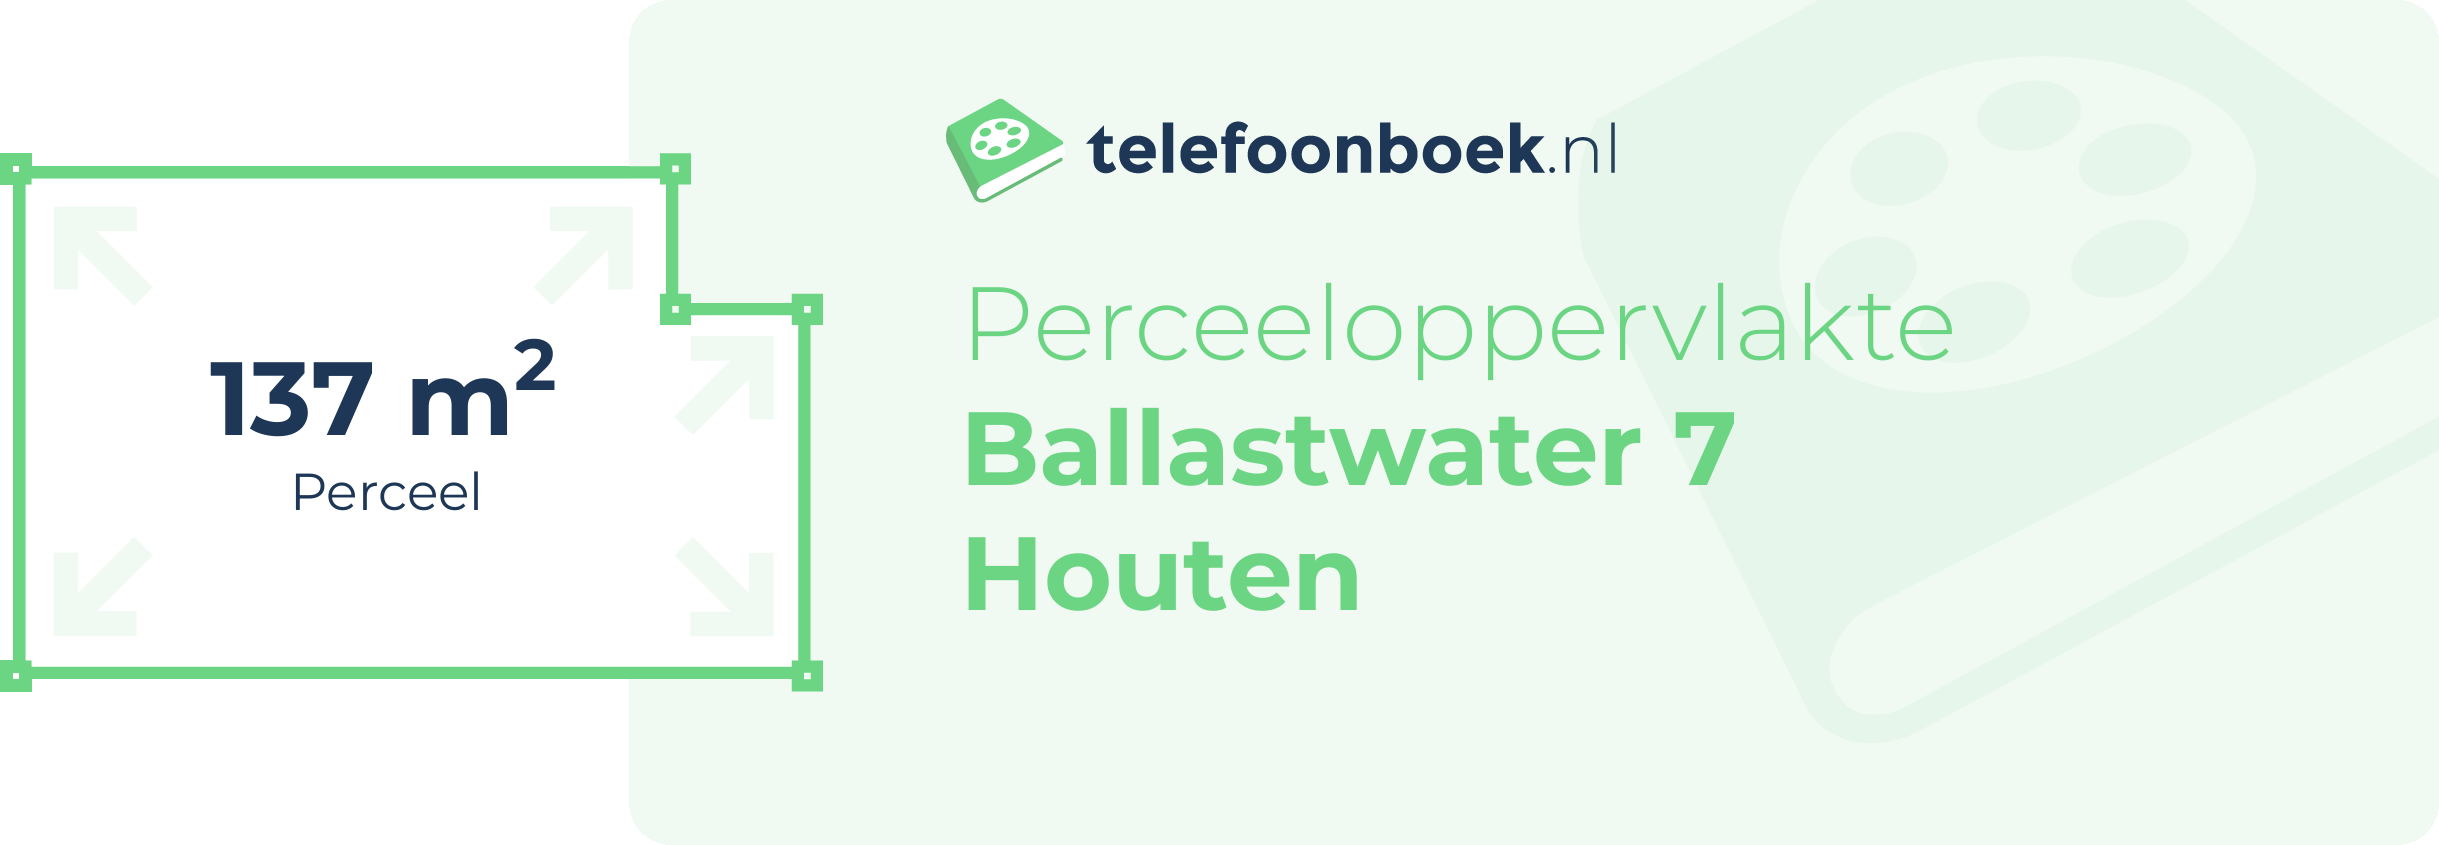 Perceeloppervlakte Ballastwater 7 Houten